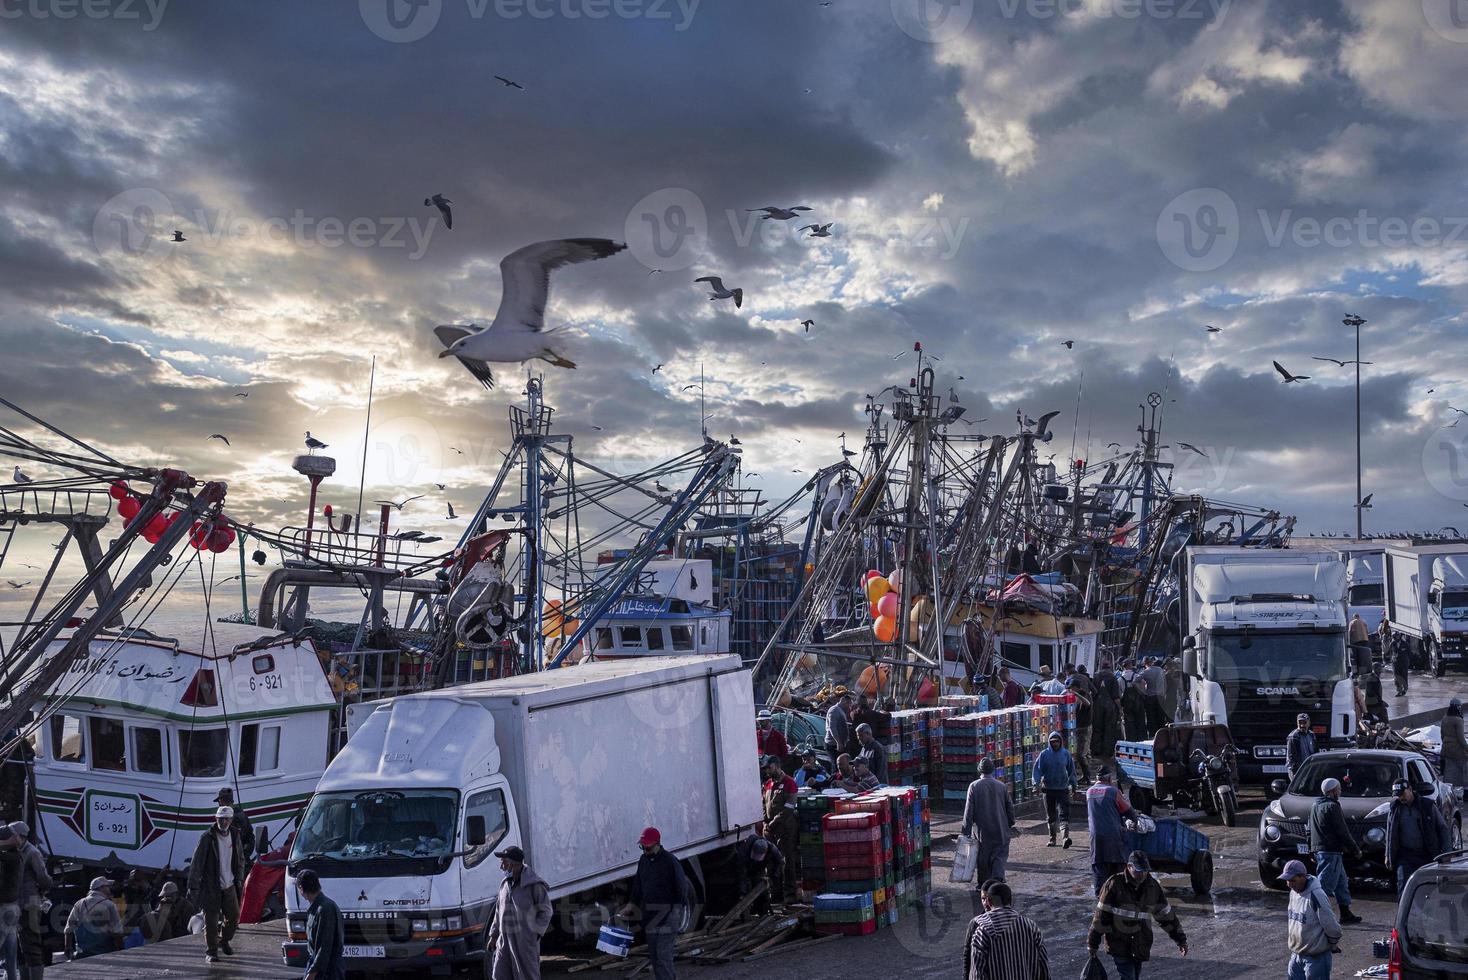 Leute laufen neben Lastwagen und Fischerbooten am Jachthafen auf dem Markt herum foto